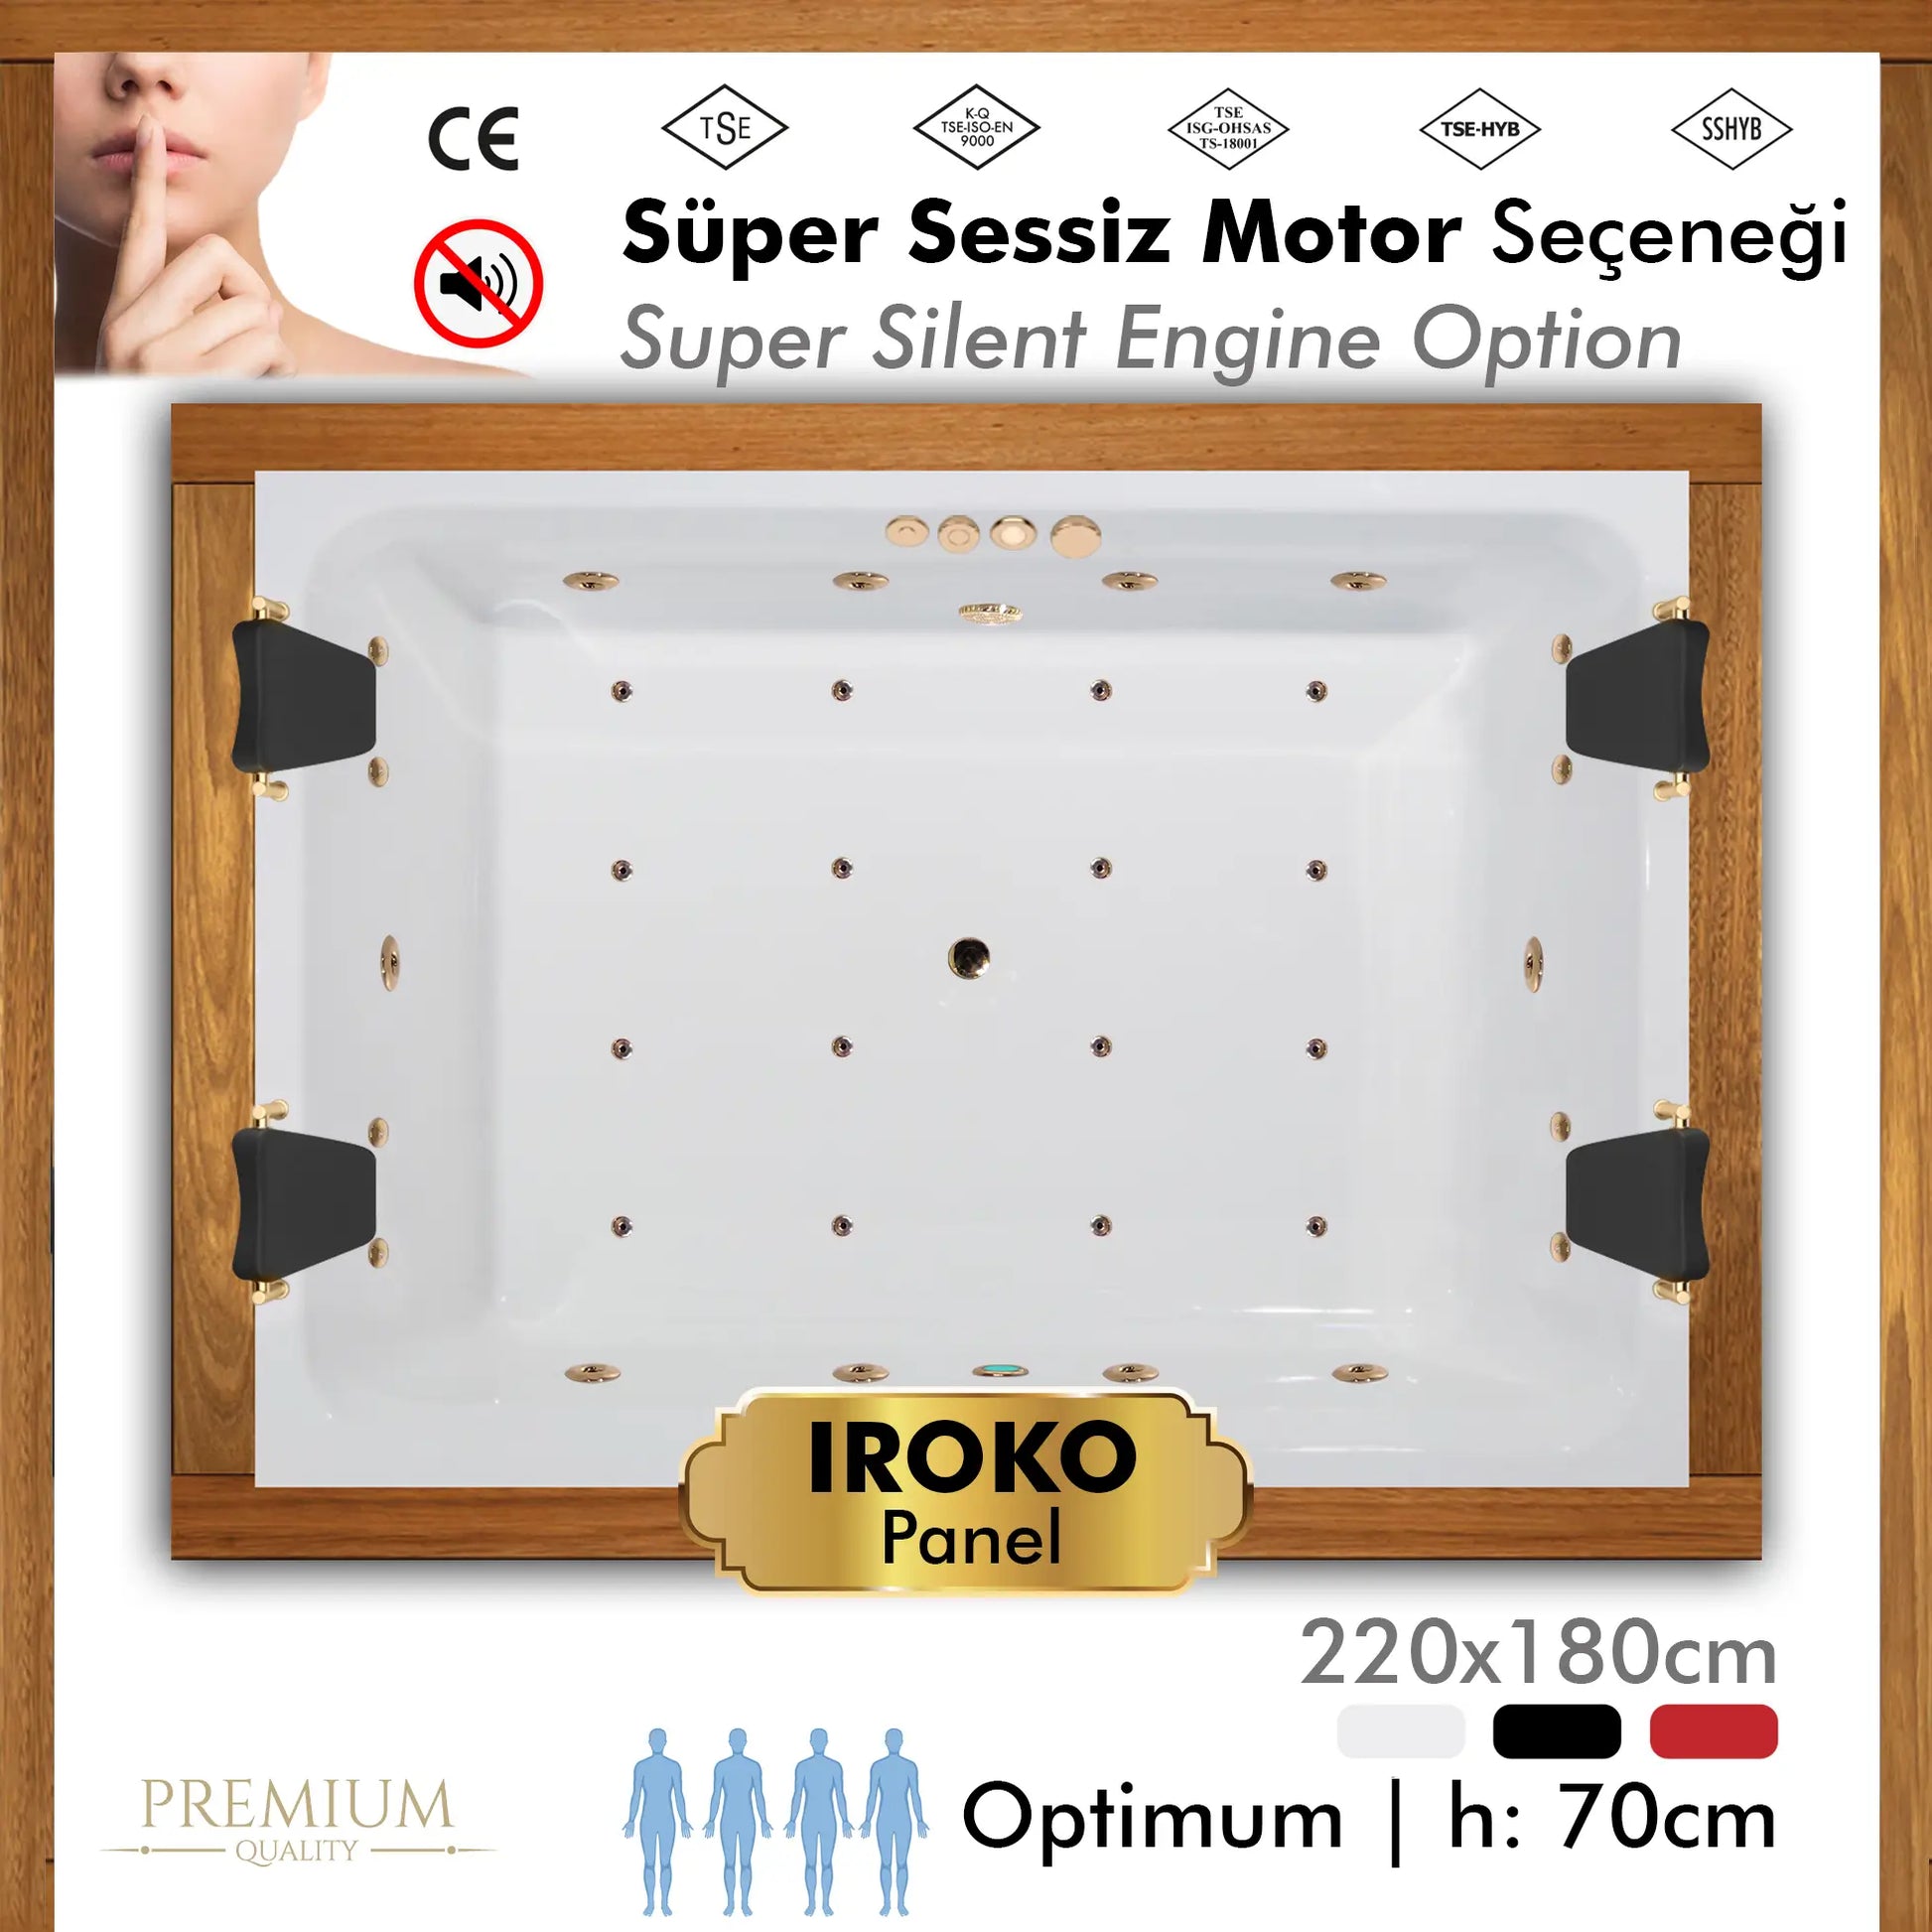 Shower Optimum Plus özel küvet, 180x220cm, 4 kişilik iroko panelli sessiz jakuzi, Türkiye